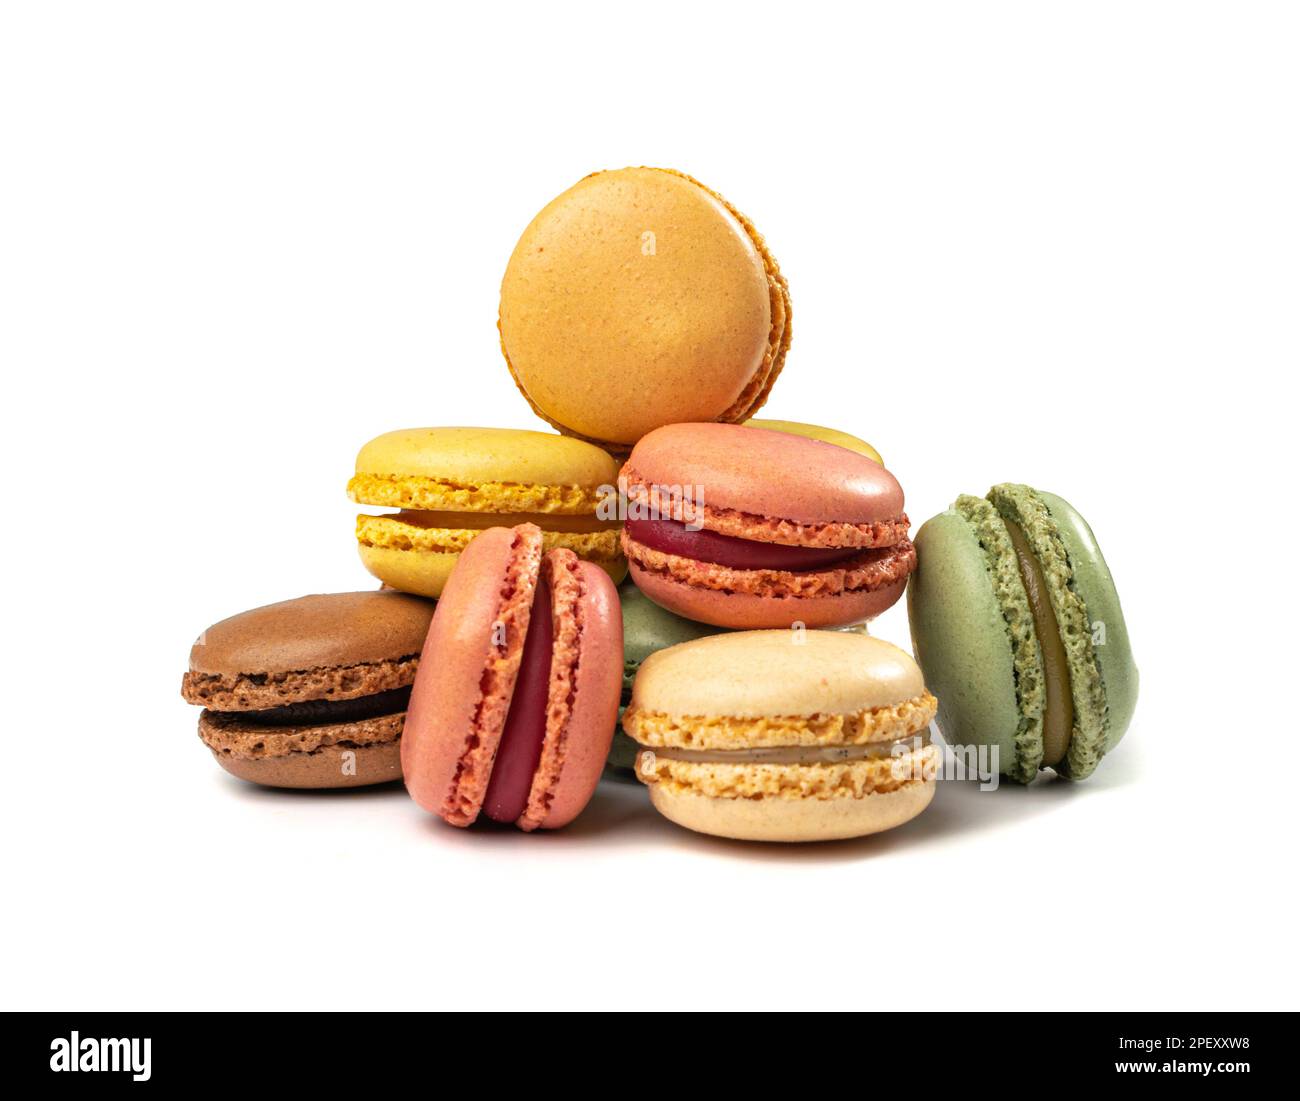 Torta al macaron isolata, biscotti al macarone, meringa alle mandorle,  amaretti dolci, dessert francese colorato su sfondo bianco Foto stock -  Alamy